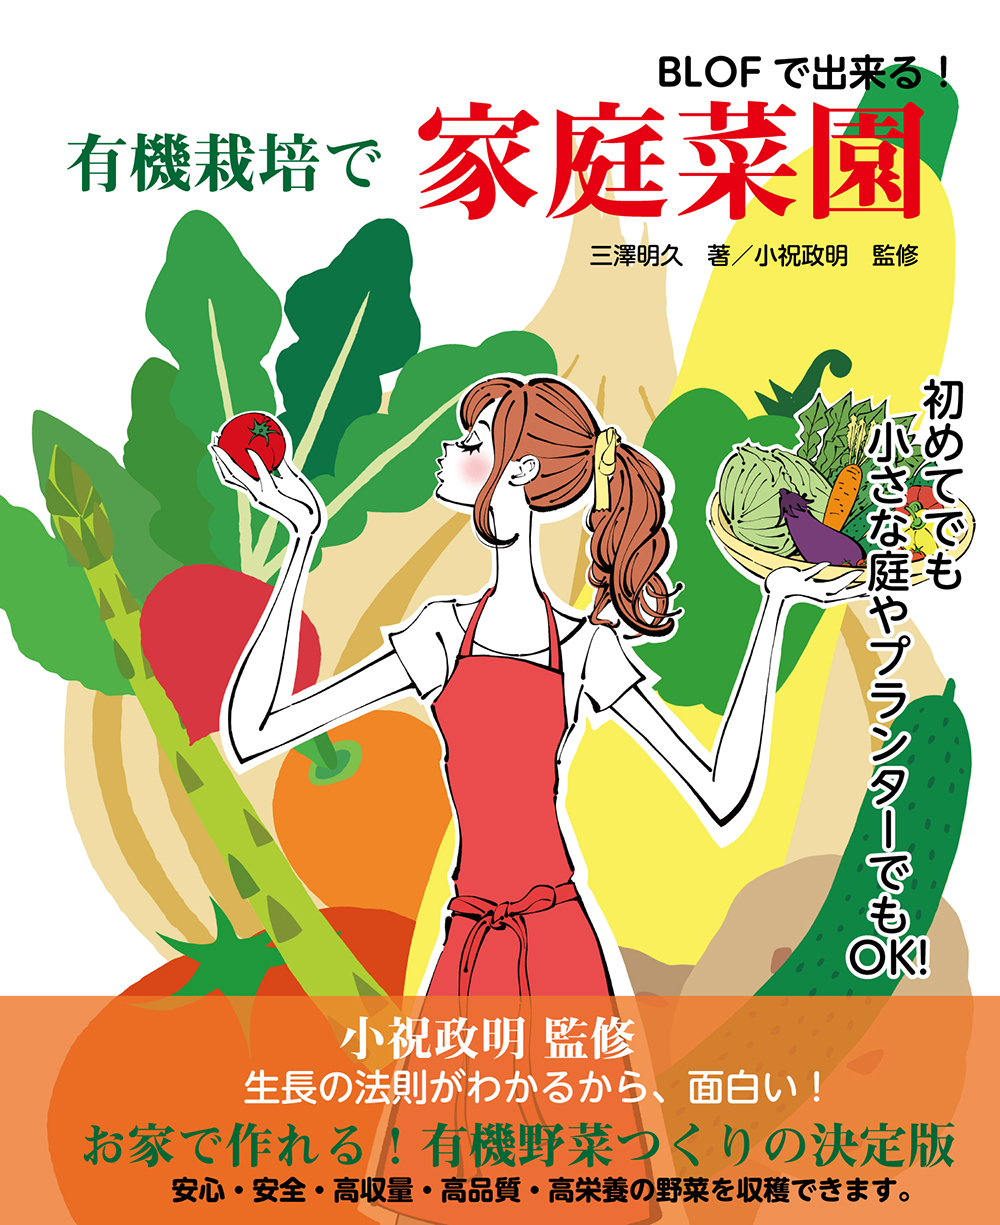 有機栽培で家庭菜園。野菜をたくさん持つポニーテールの女性のイラスト